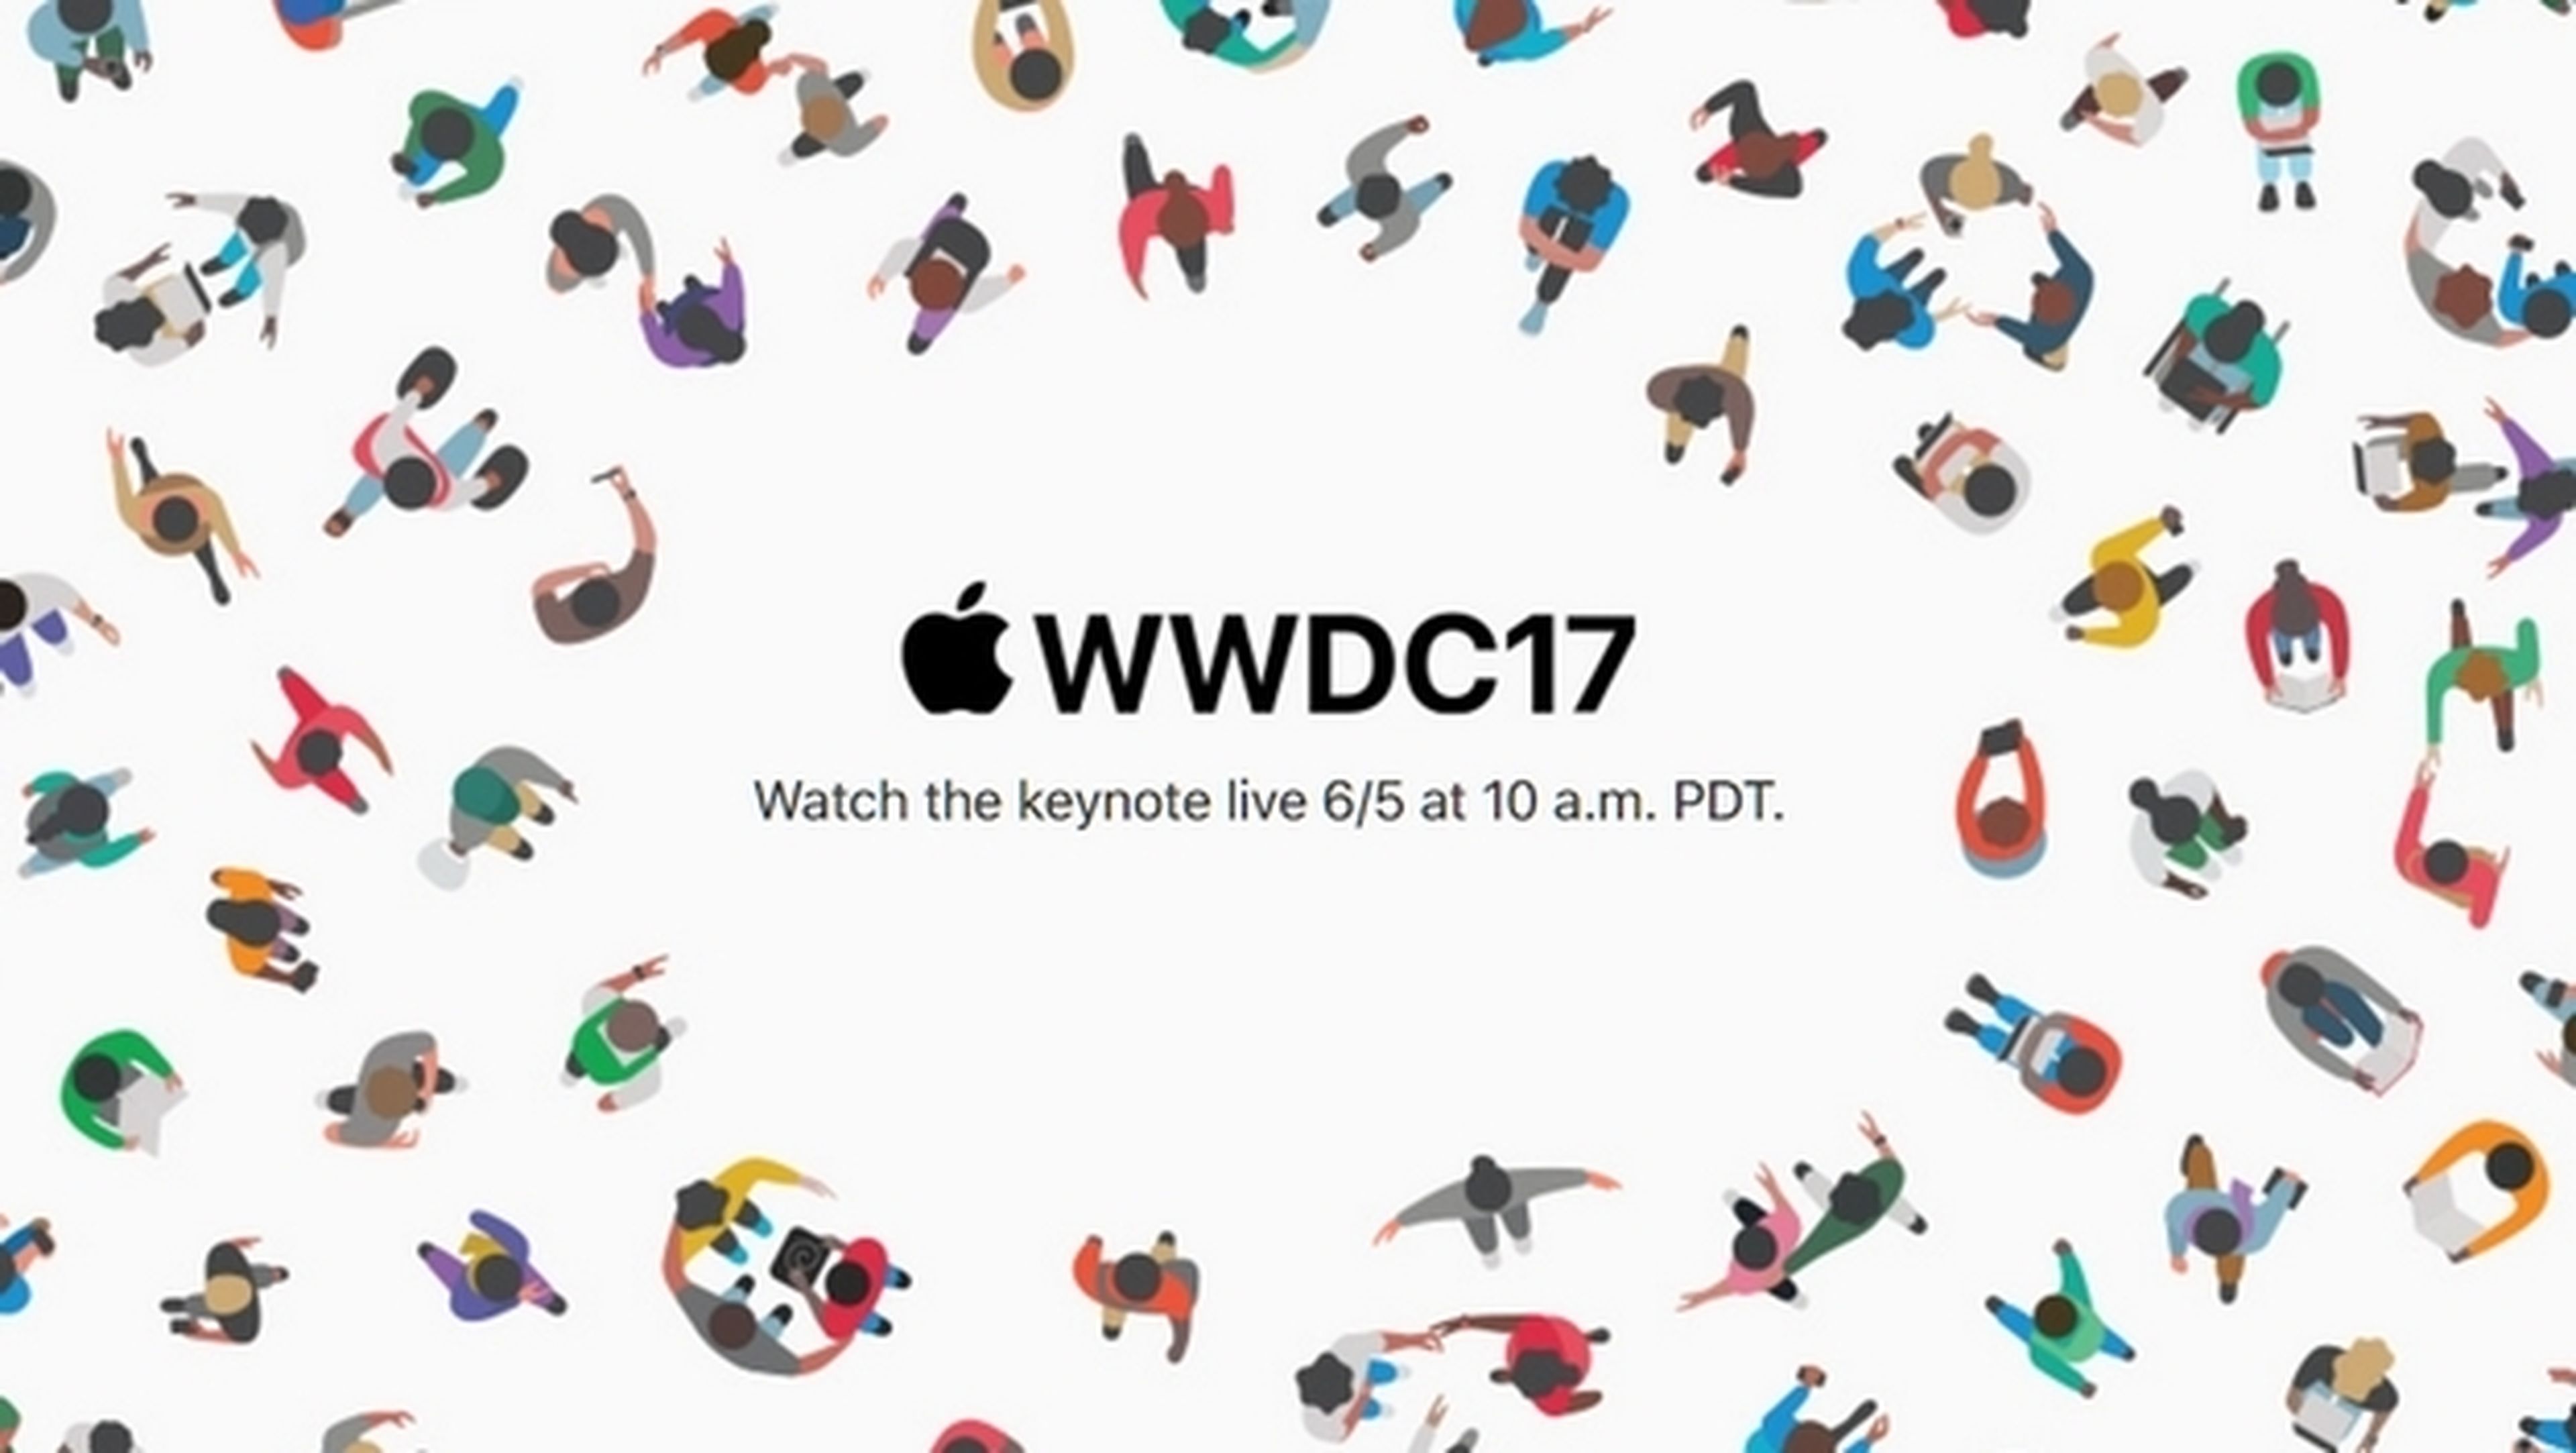 iPad Pro, MacBook, iOS 11...Qué esperamos de la WWDC 2017 de Apple